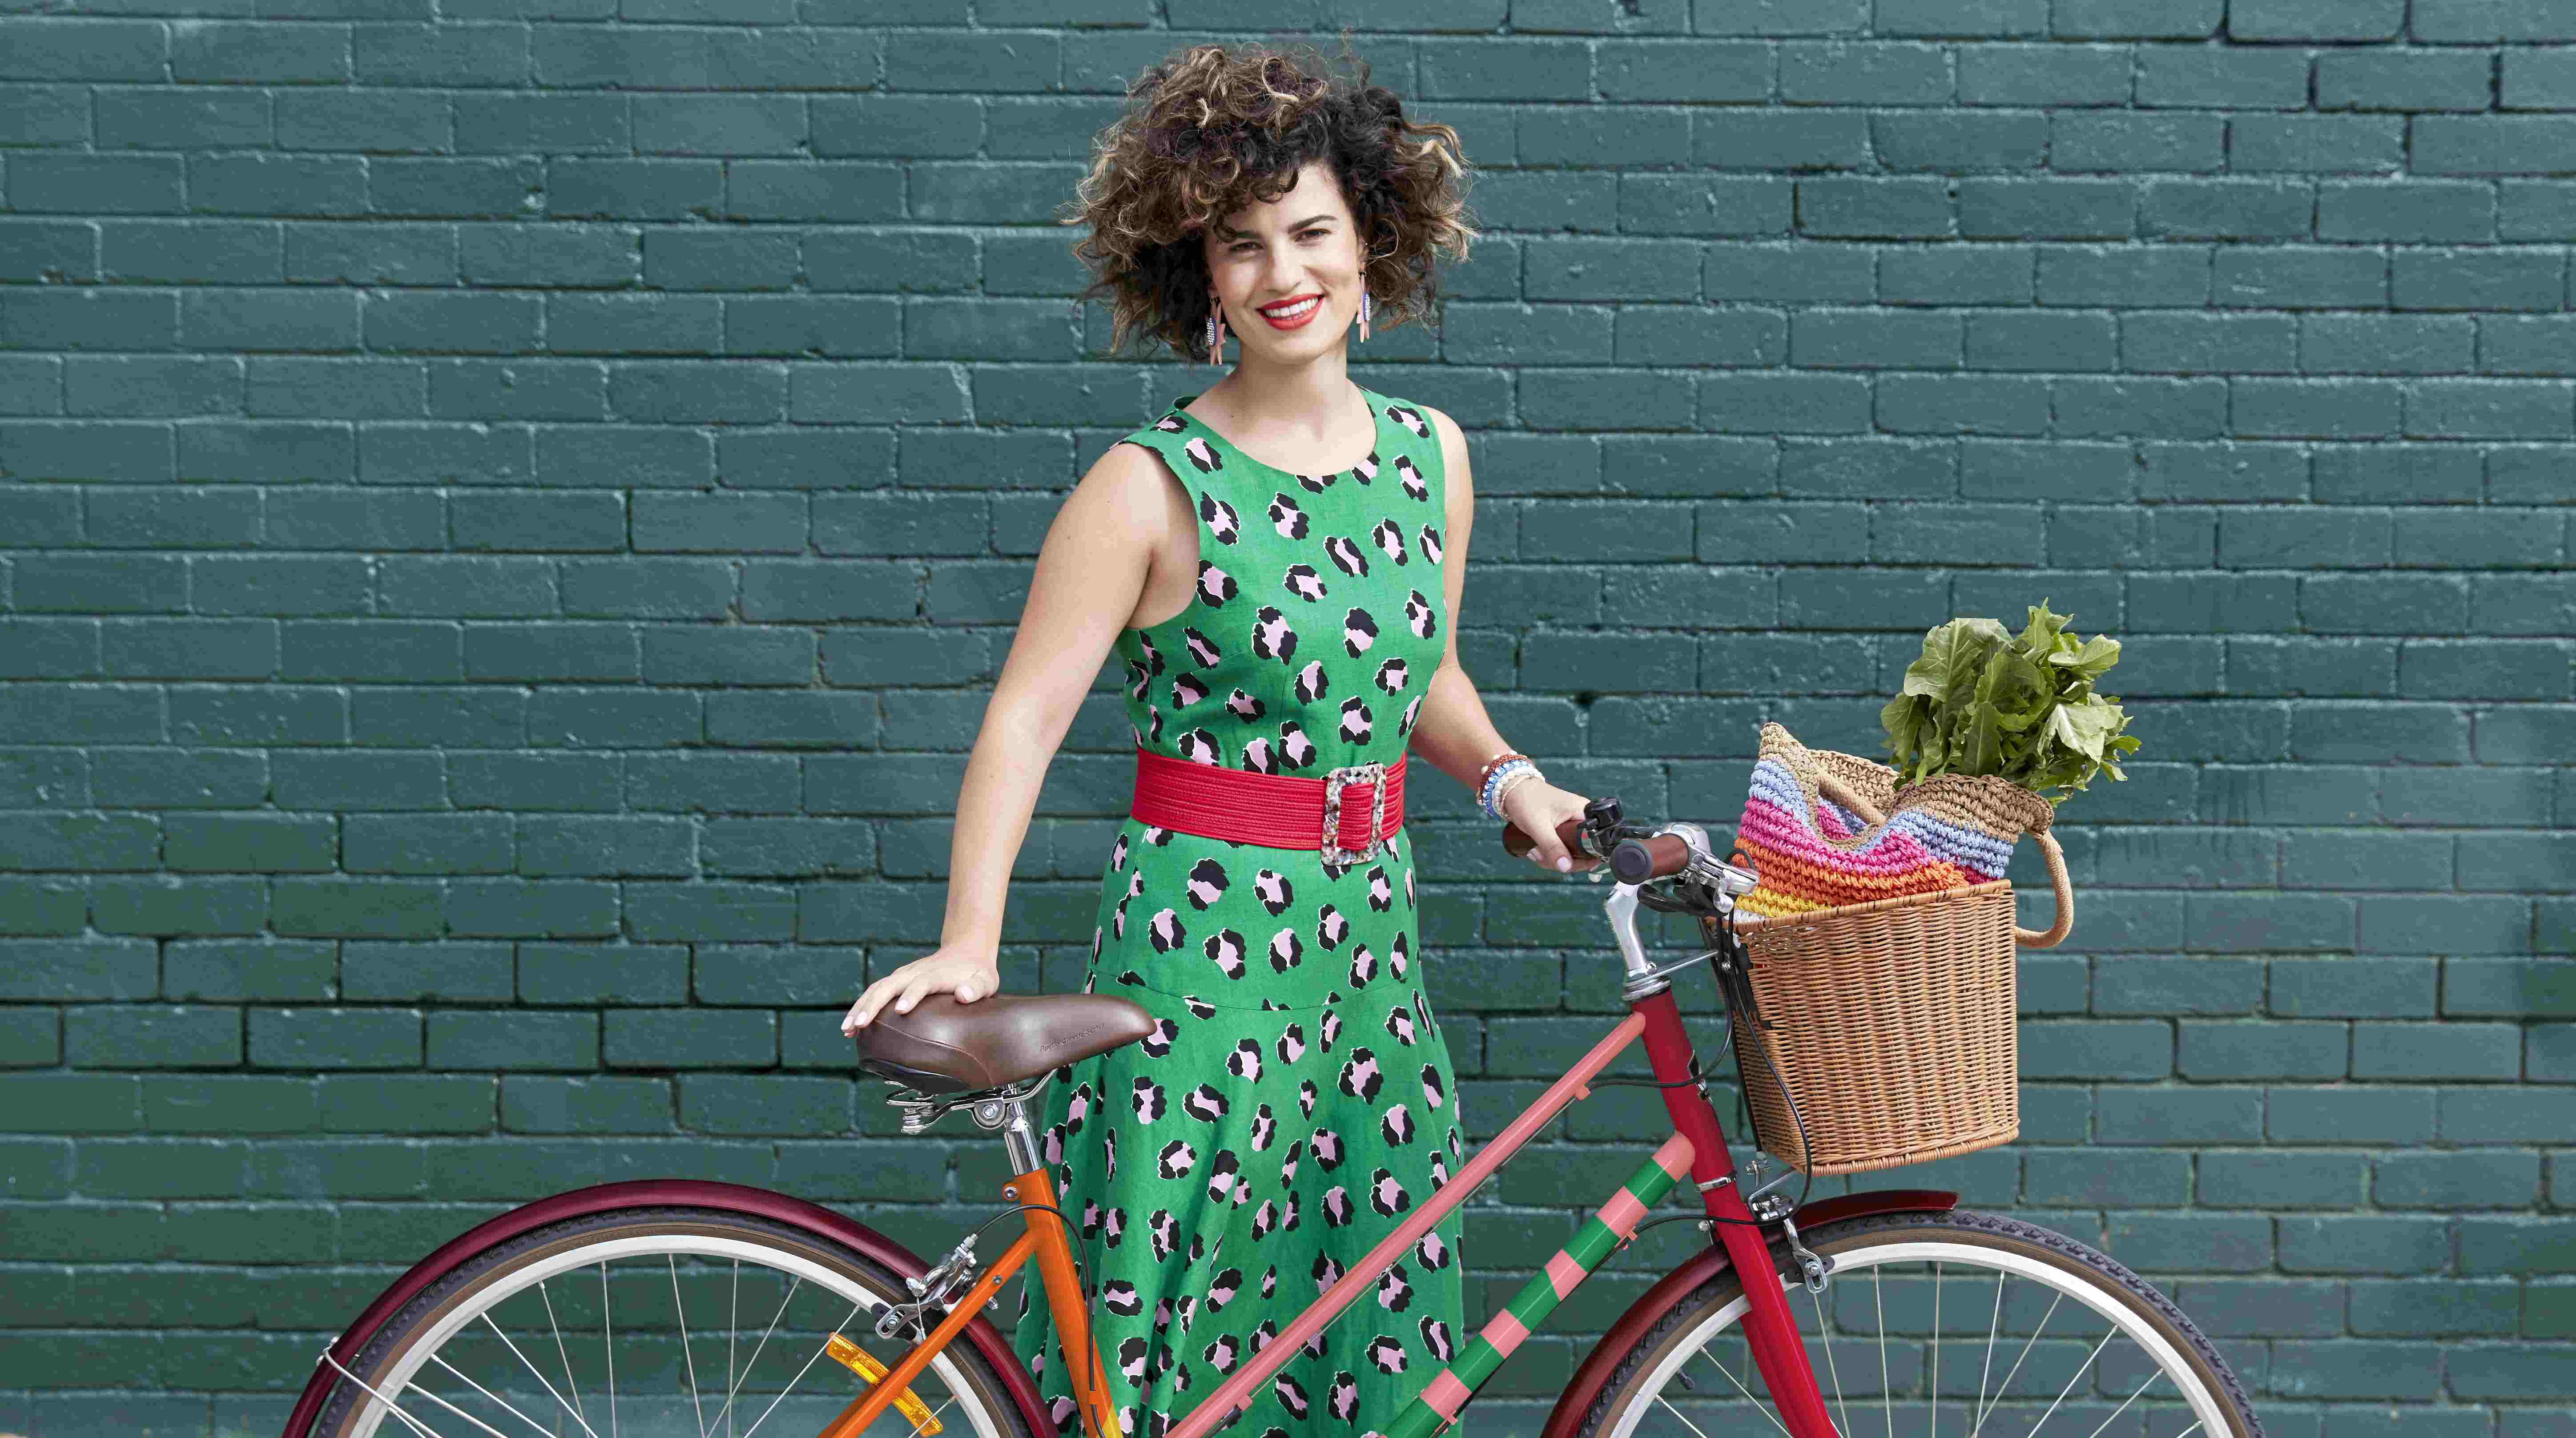 Lady with bike